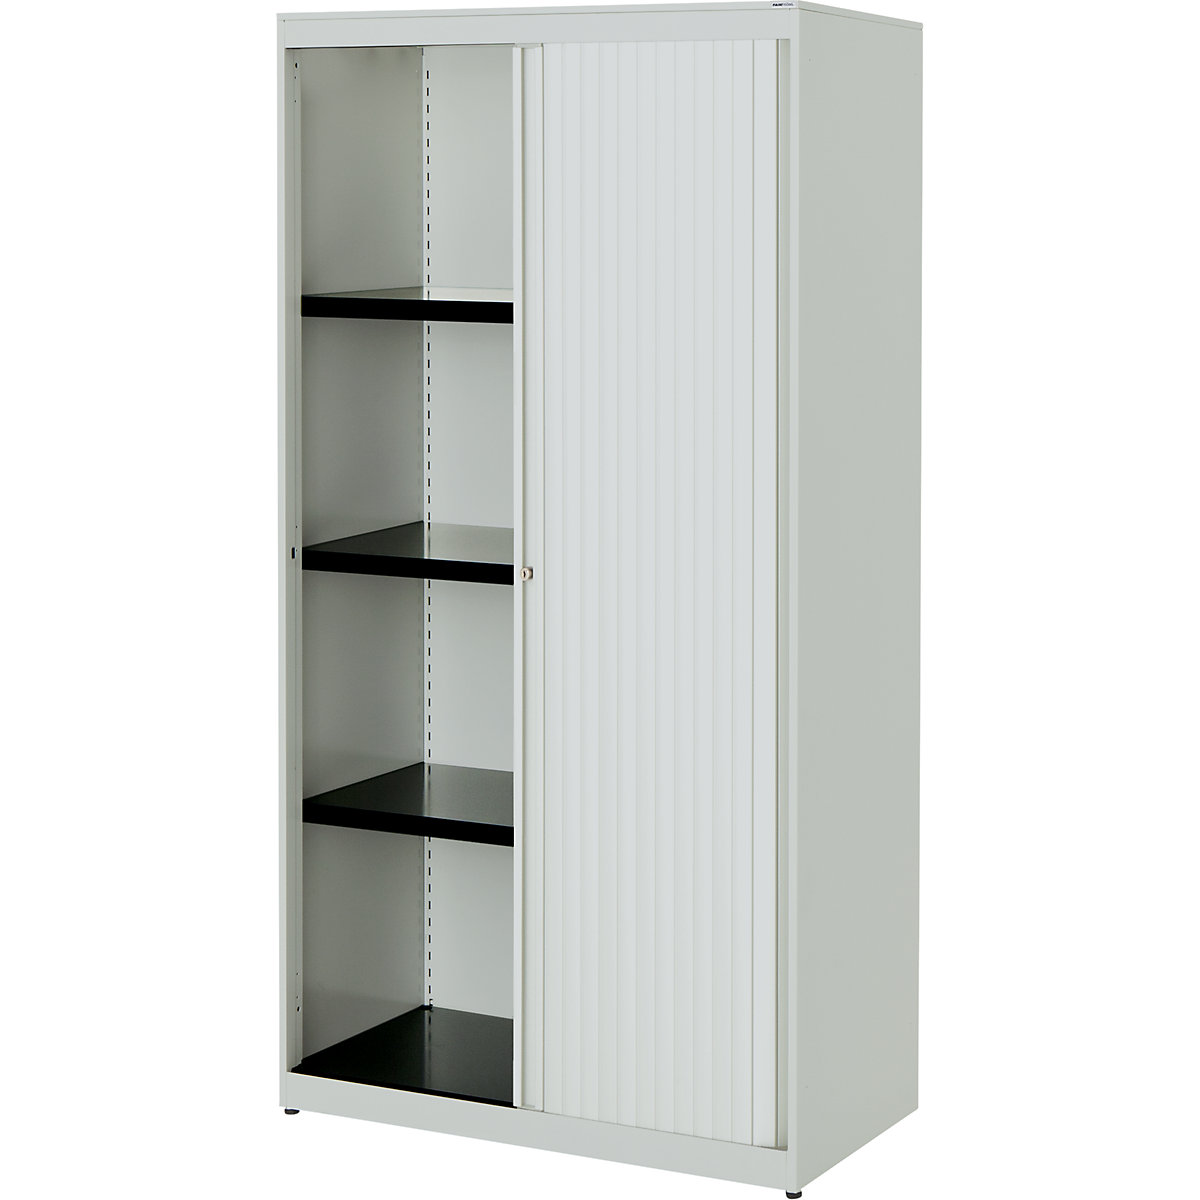 Horizontal roller shutter cupboard – mauser, HxWxD 1516 x 800 x 432 mm, steel plate, 3 shelves, light grey / light grey / light grey-3